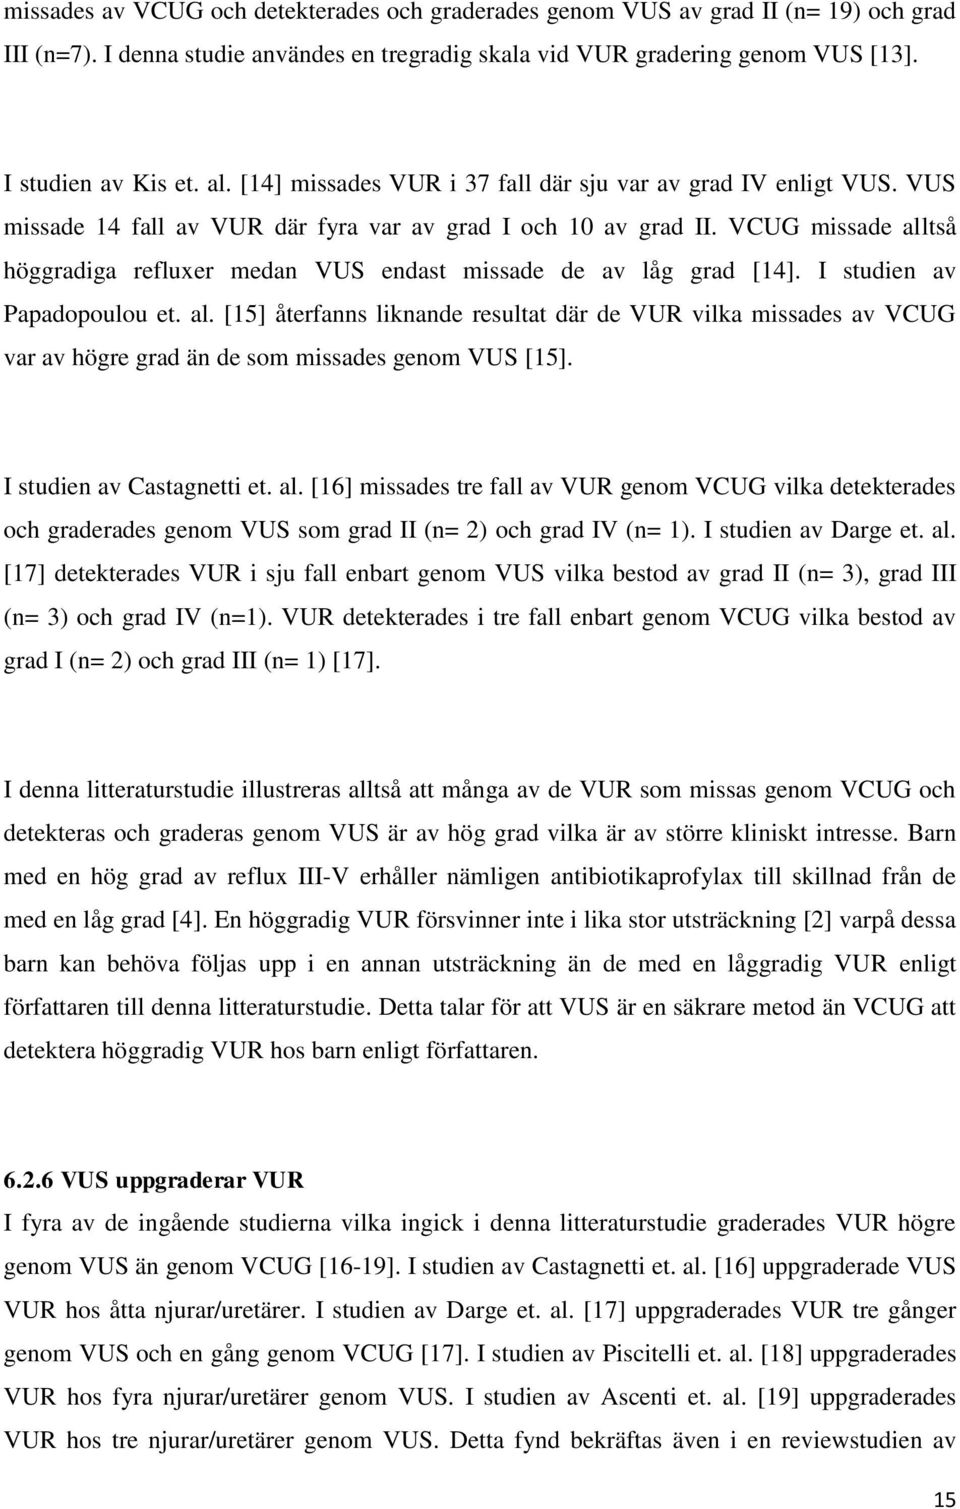 VCUG missade alltså höggradiga refluxer medan VUS endast missade de av låg grad [14]. I studien av Papadopoulou et. al. [15] återfanns liknande resultat där de VUR vilka missades av VCUG var av högre grad än de som missades genom VUS [15].